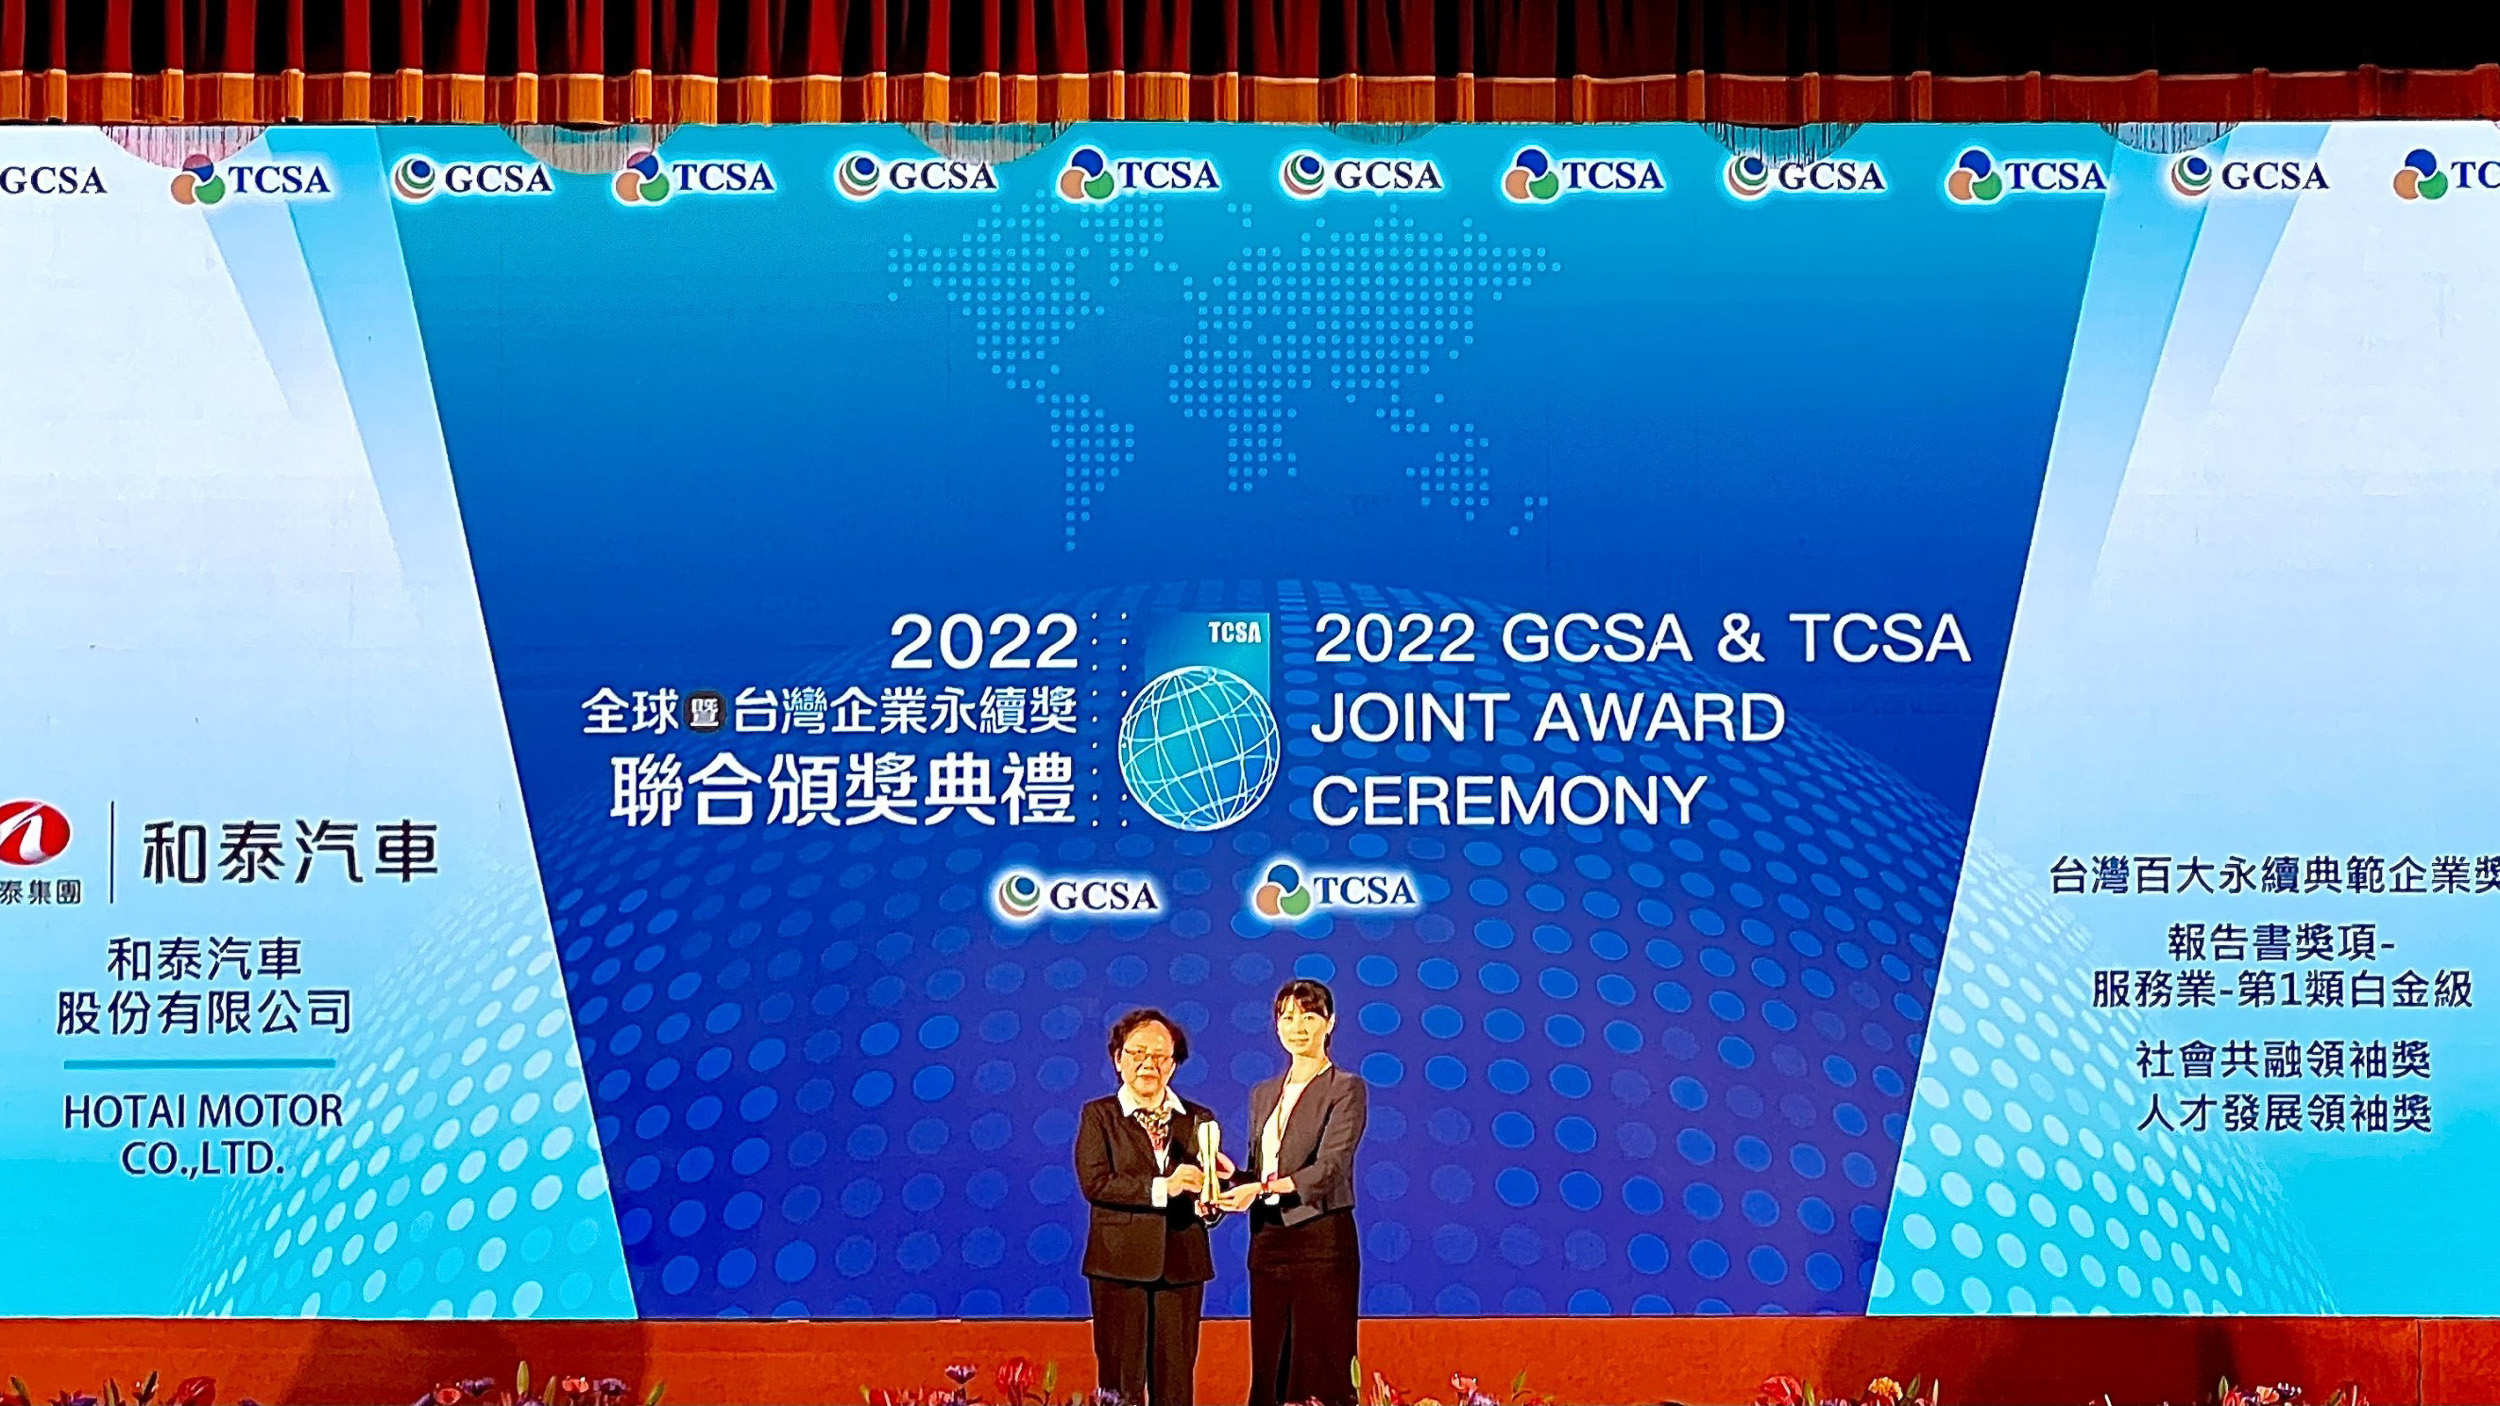 ▲ 和泰汽車連續七年榮獲 TCSA 台灣企業永續獎肯定